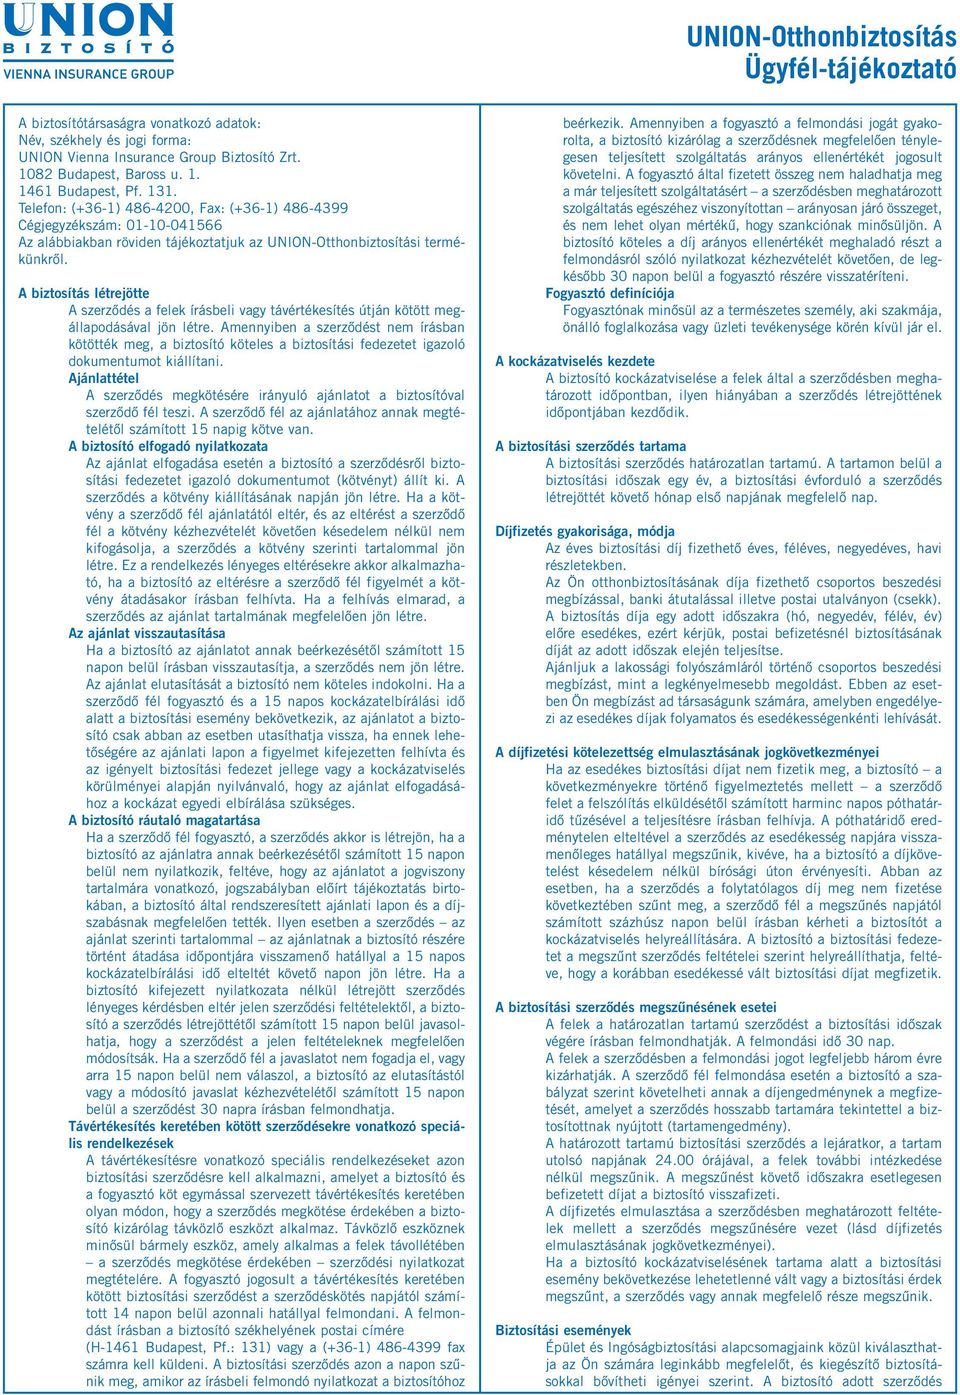 UNION-Otthonbiztosítás Ügyfél-tájékoztató - PDF Ingyenes letöltés